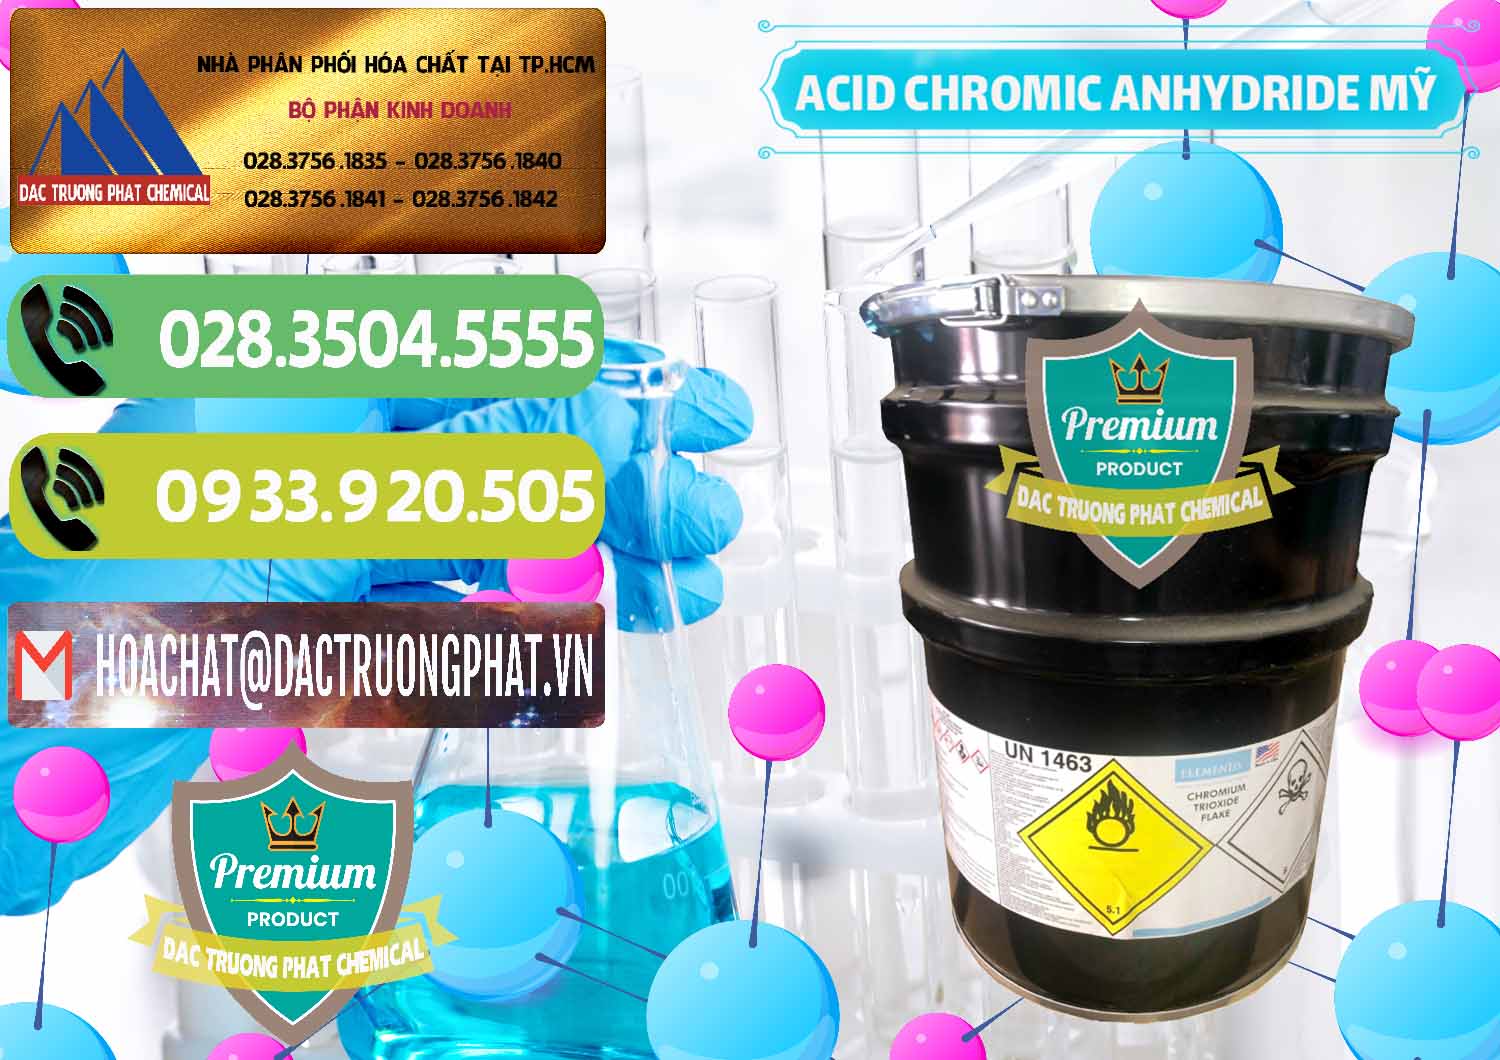 Nơi kinh doanh - bán Acid Chromic Anhydride - Cromic CRO3 USA Mỹ - 0364 - Công ty cung cấp ( phân phối ) hóa chất tại TP.HCM - hoachatmientay.vn